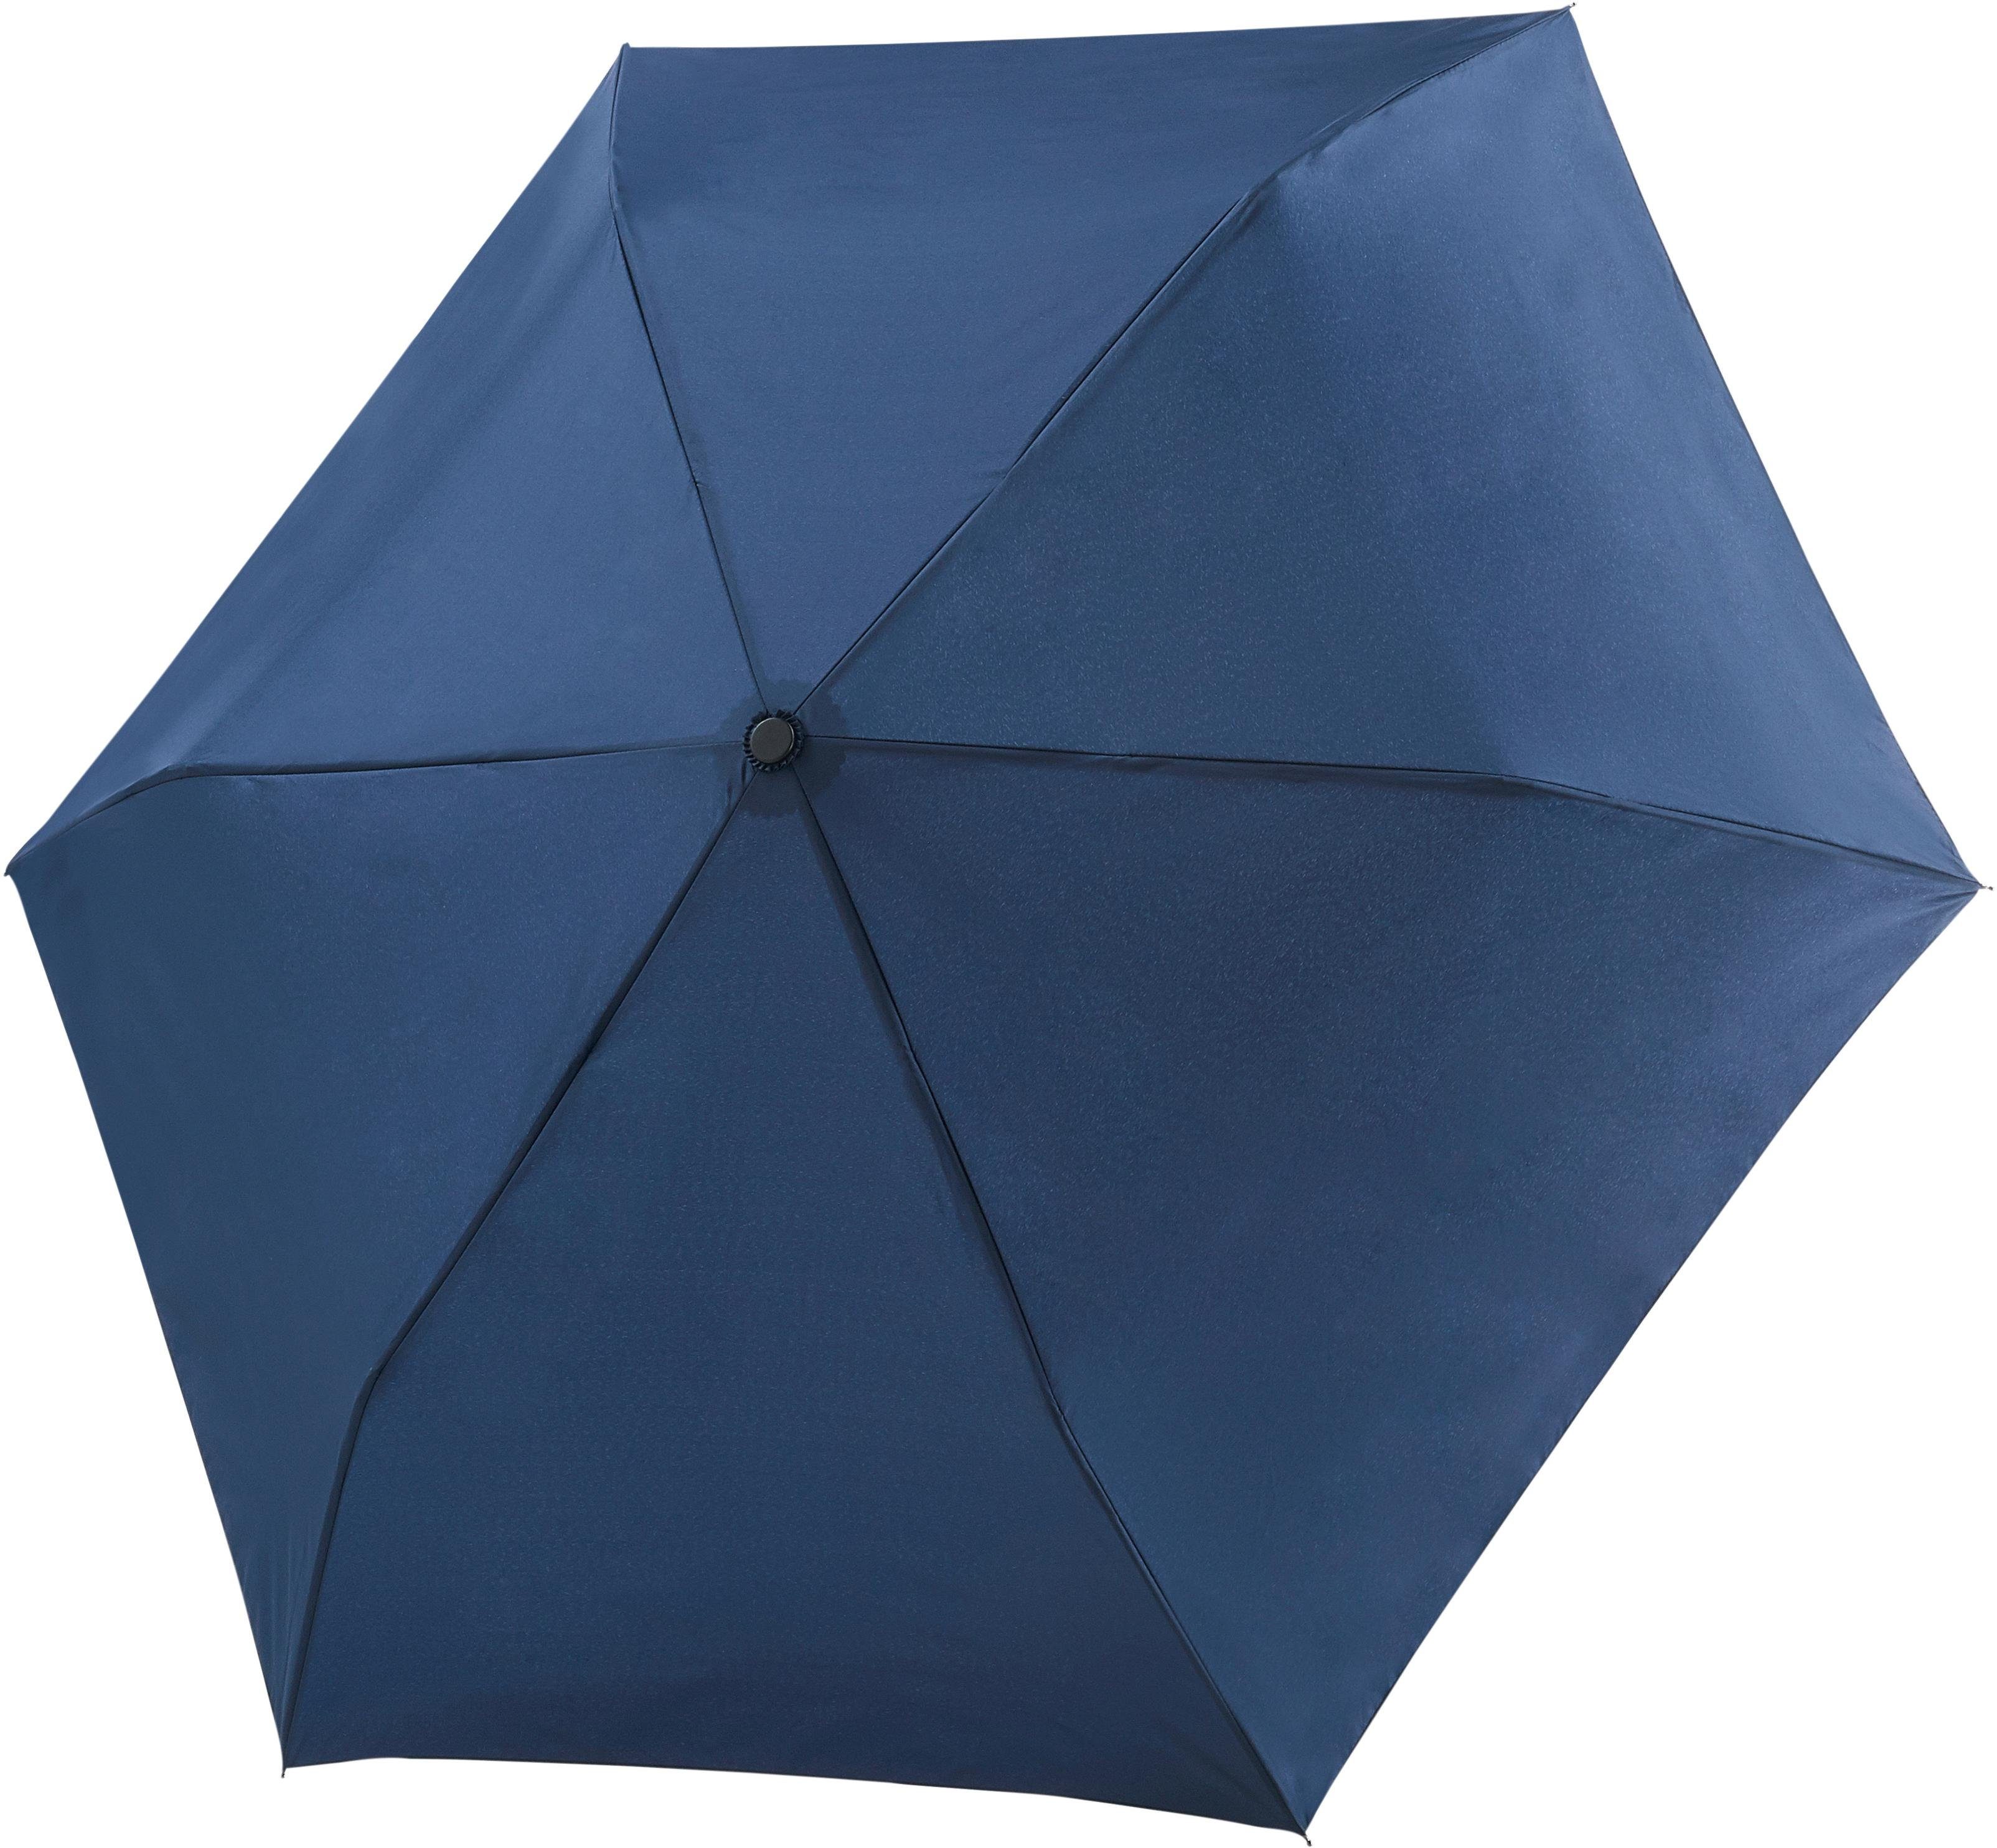 Damen Regenschirme doppler® Taschenregenschirm Fiber Havanna uni, Navy